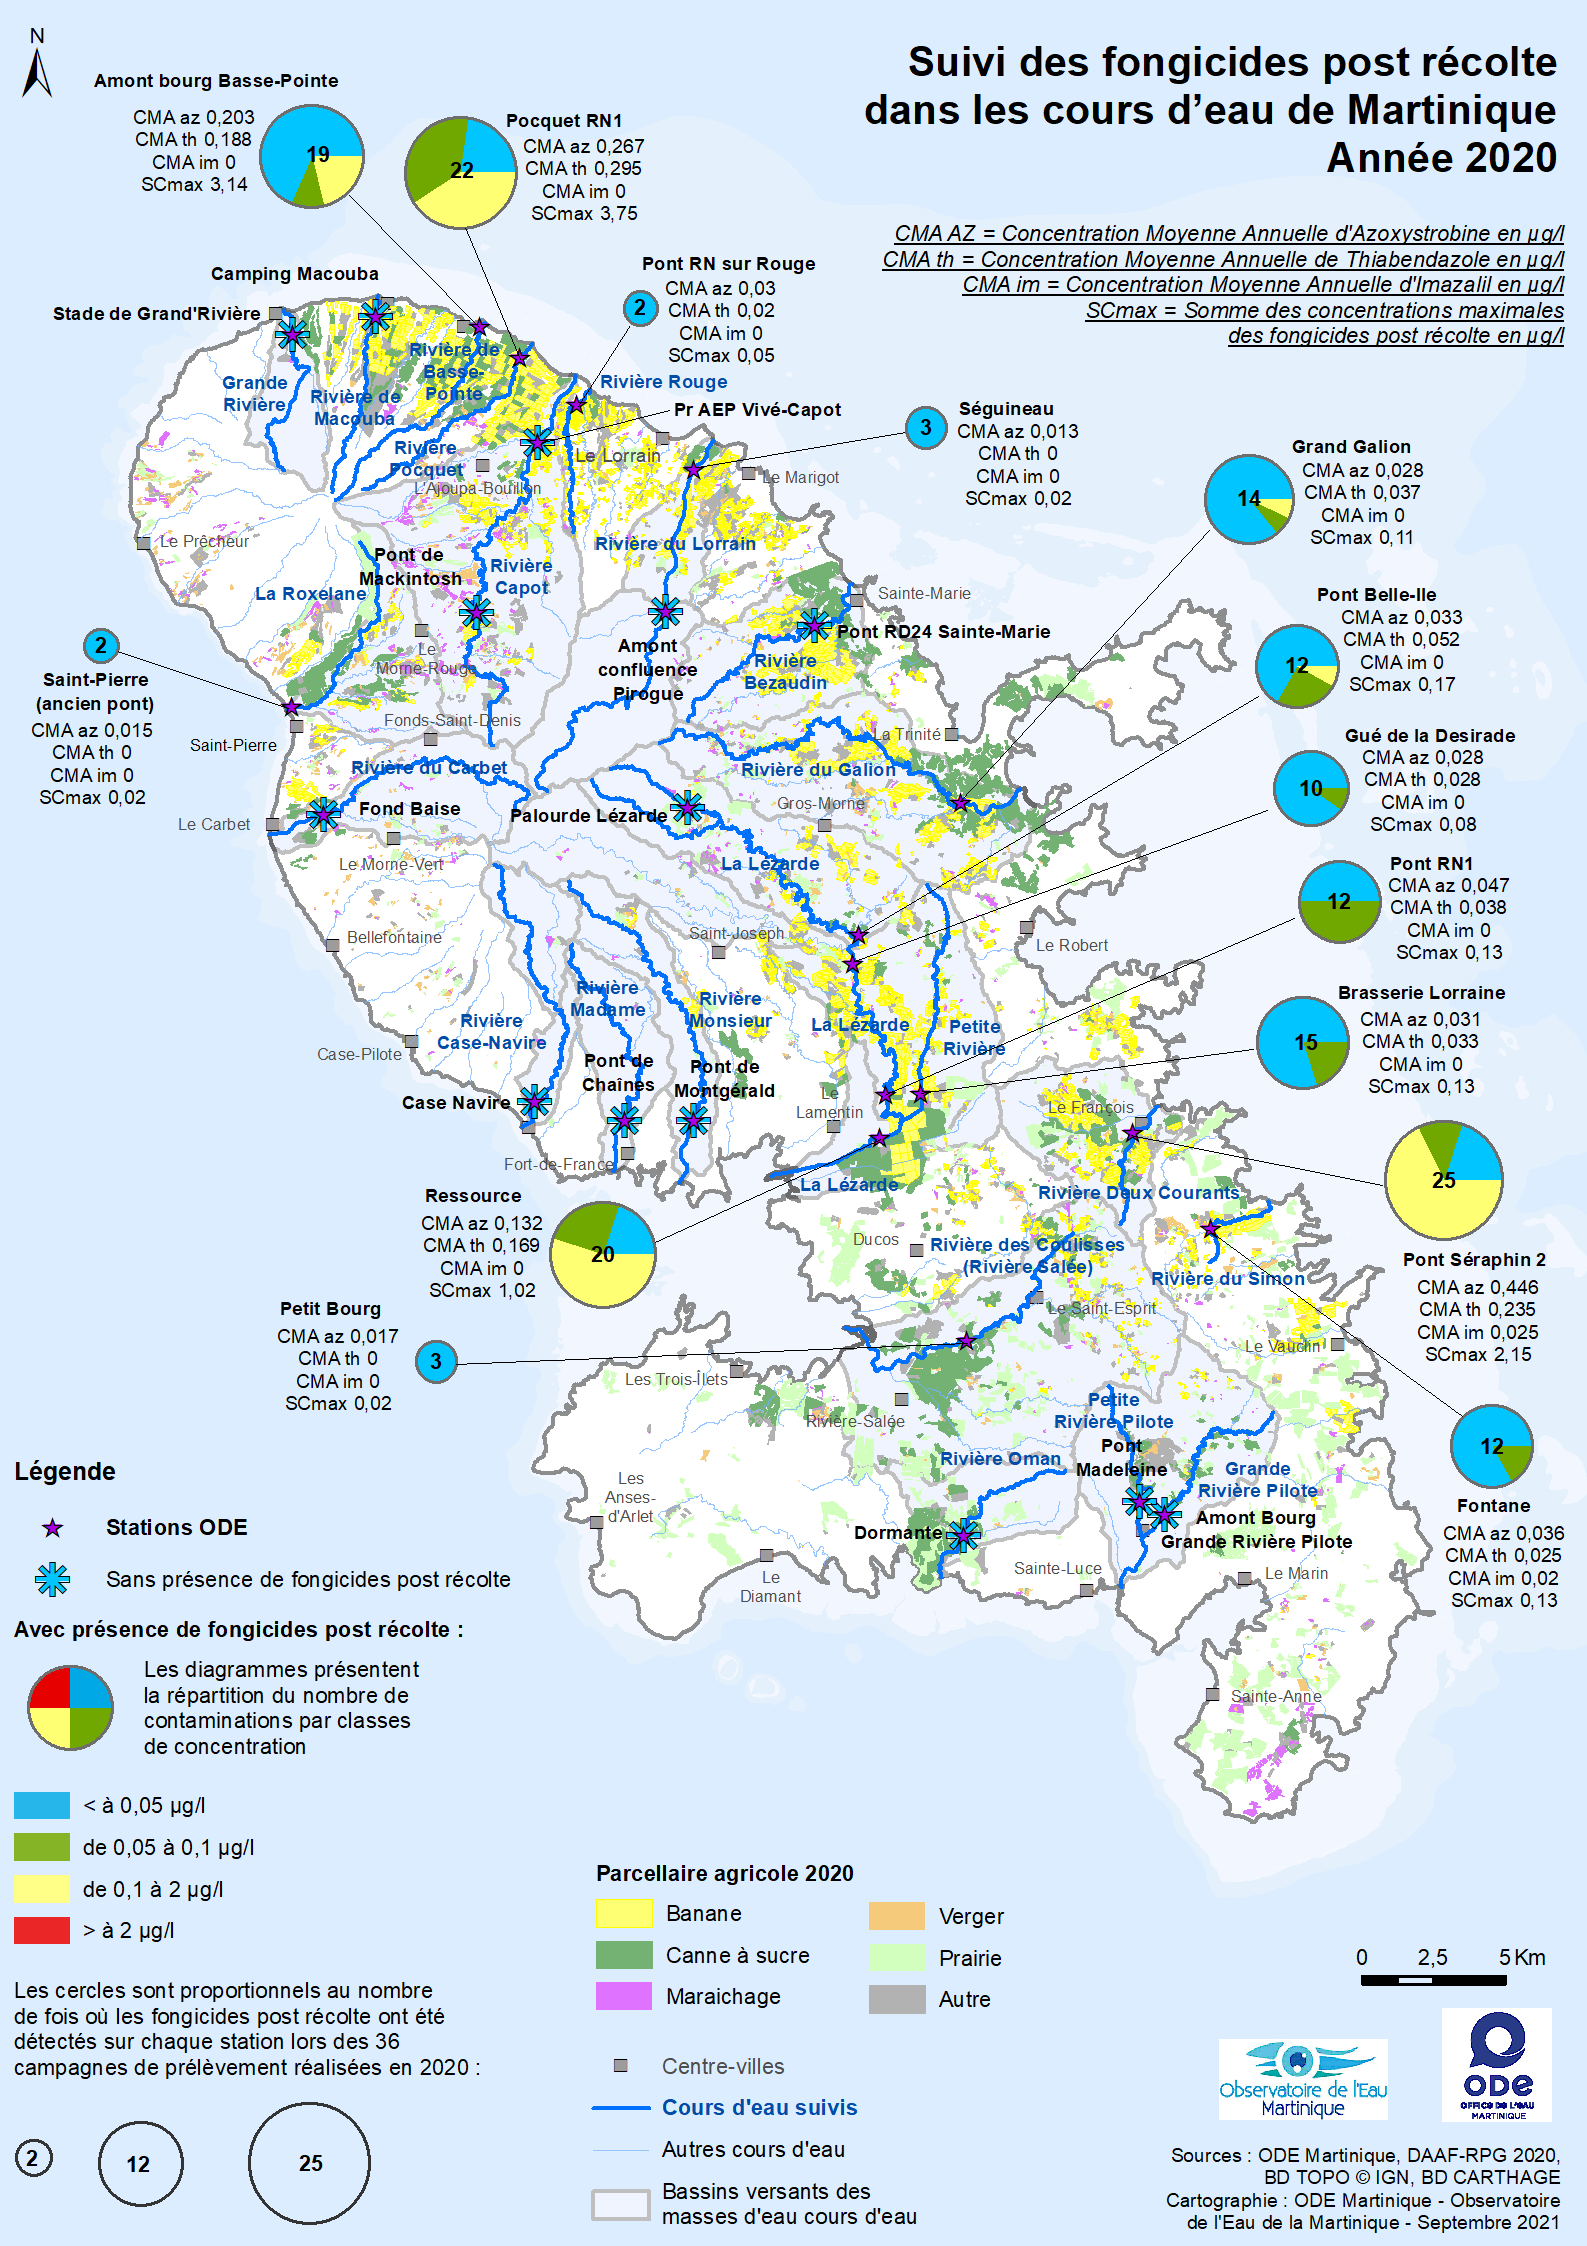 Suivi des fongicides post récolte dans les cours d'eau de Martinique - Année 2020